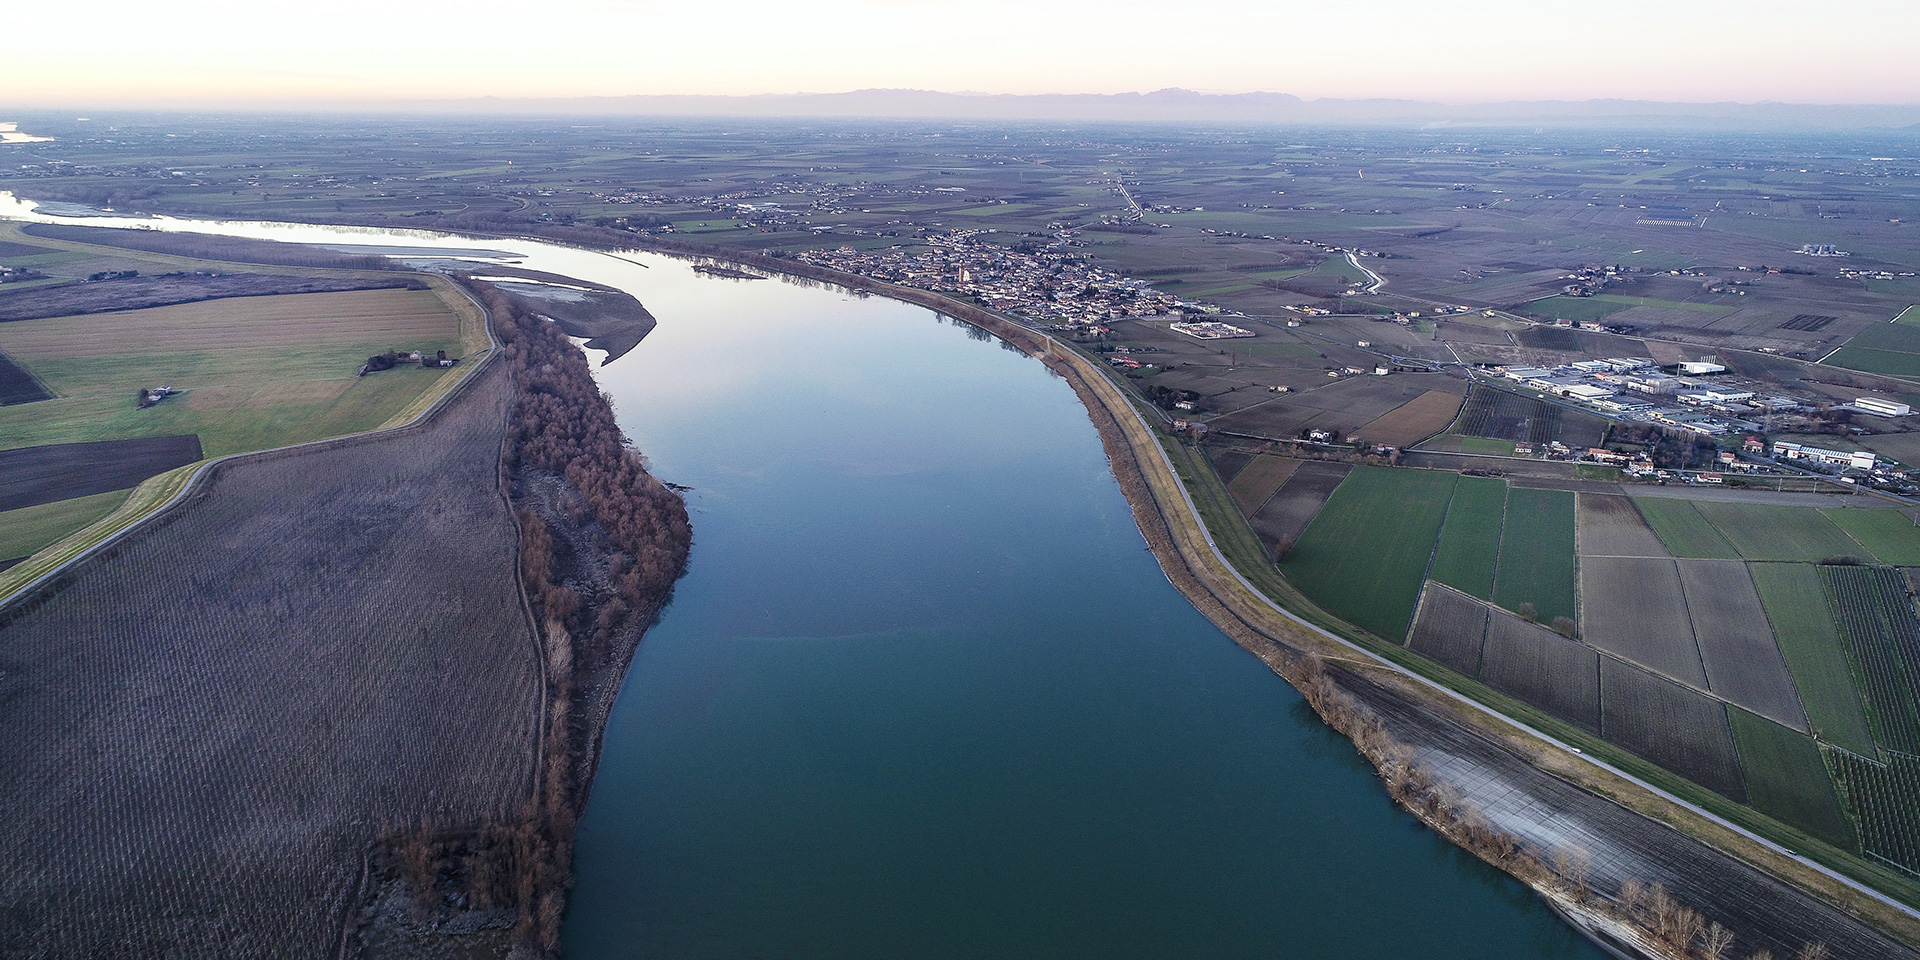 Progetto fiume Po Revere-Ferrara, Binini Partners, Società di architettura e ingegneria